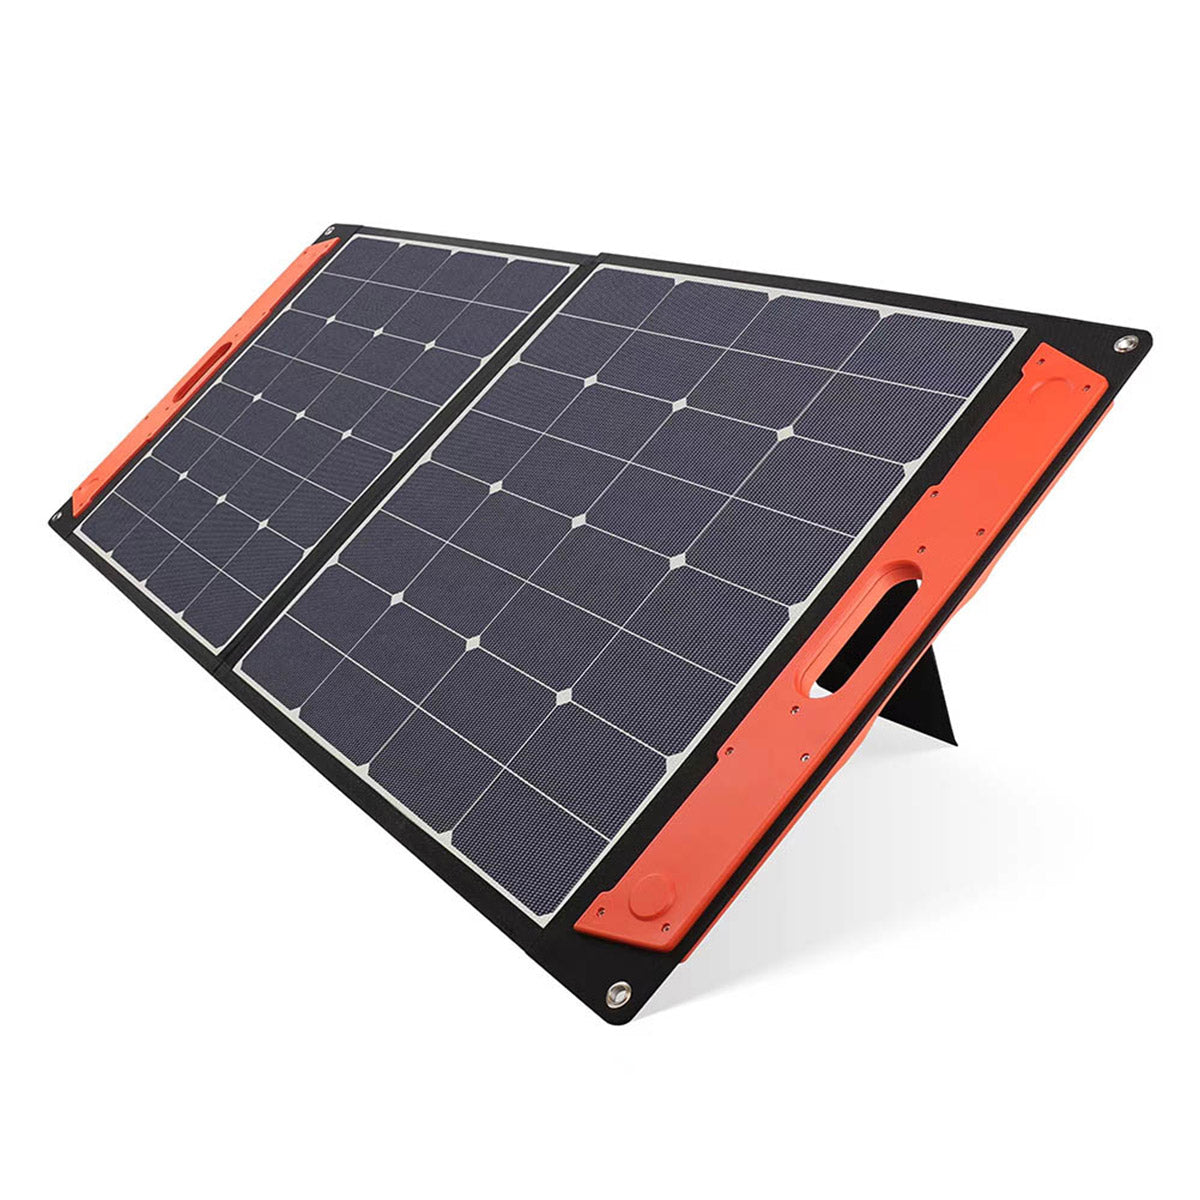 Pannello solare flessibile, un'invenzione italiana da 100 milioni di dollari